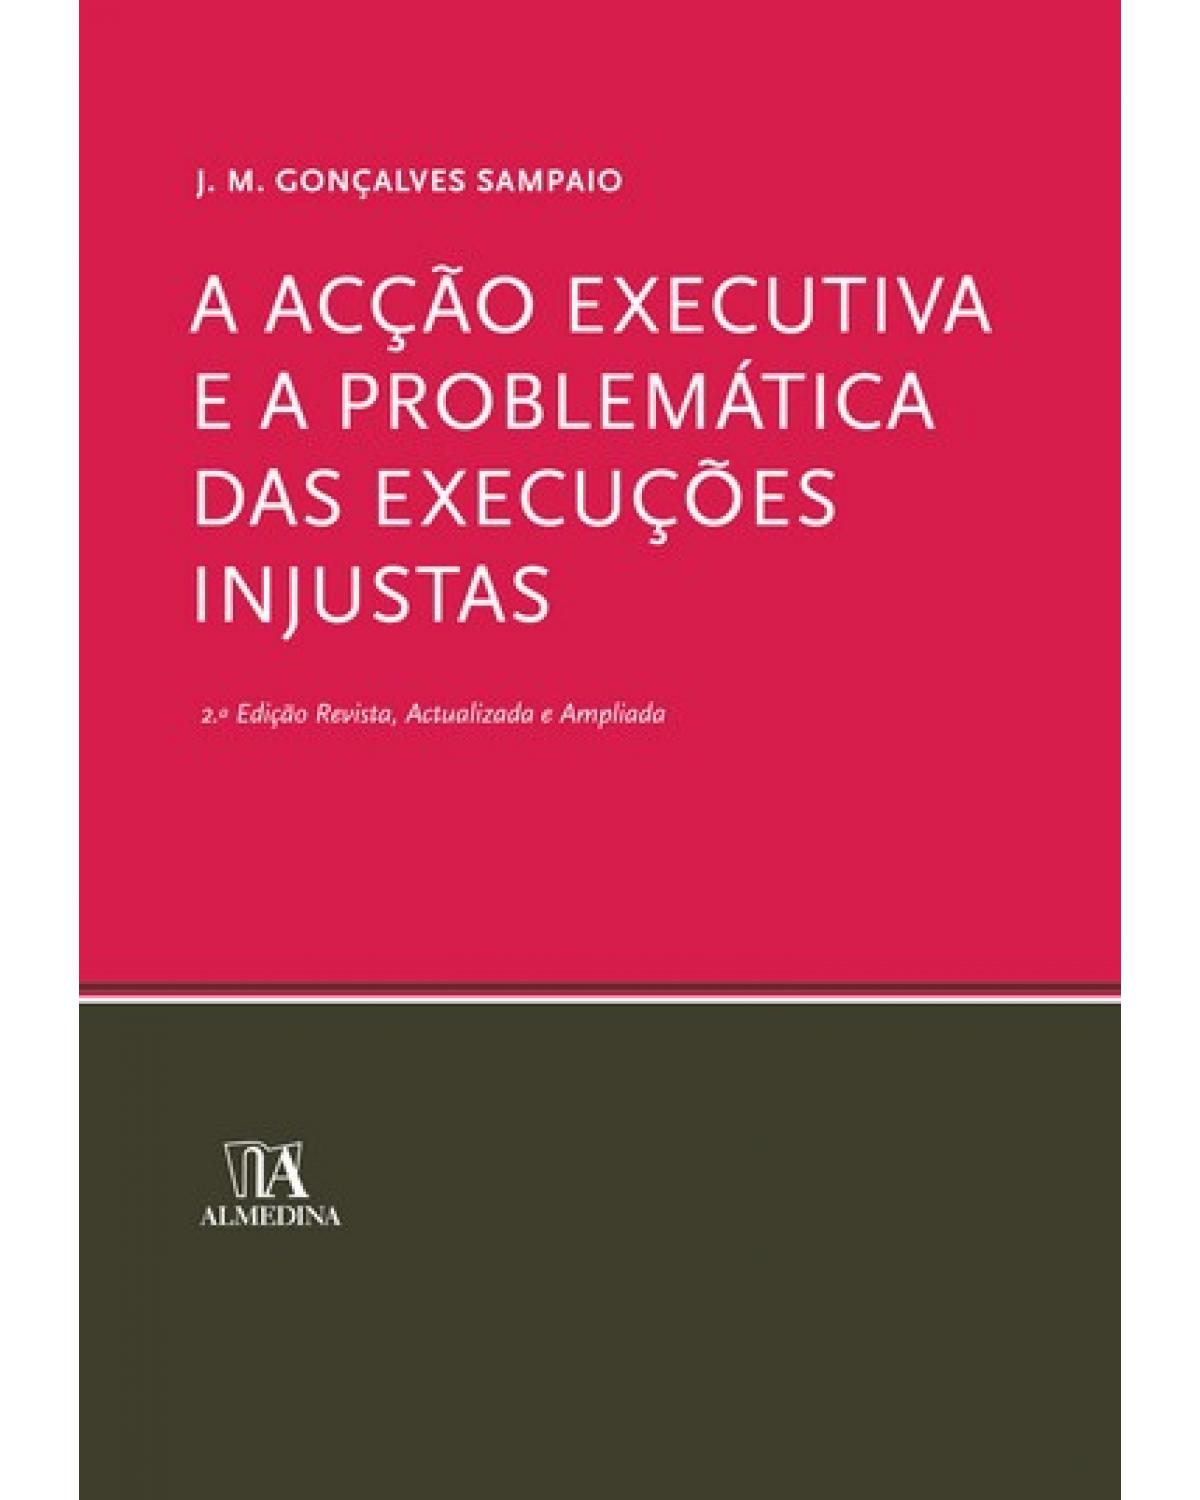 A acção executiva e a problemática das execuções injustas - 2ª Edição | 2008